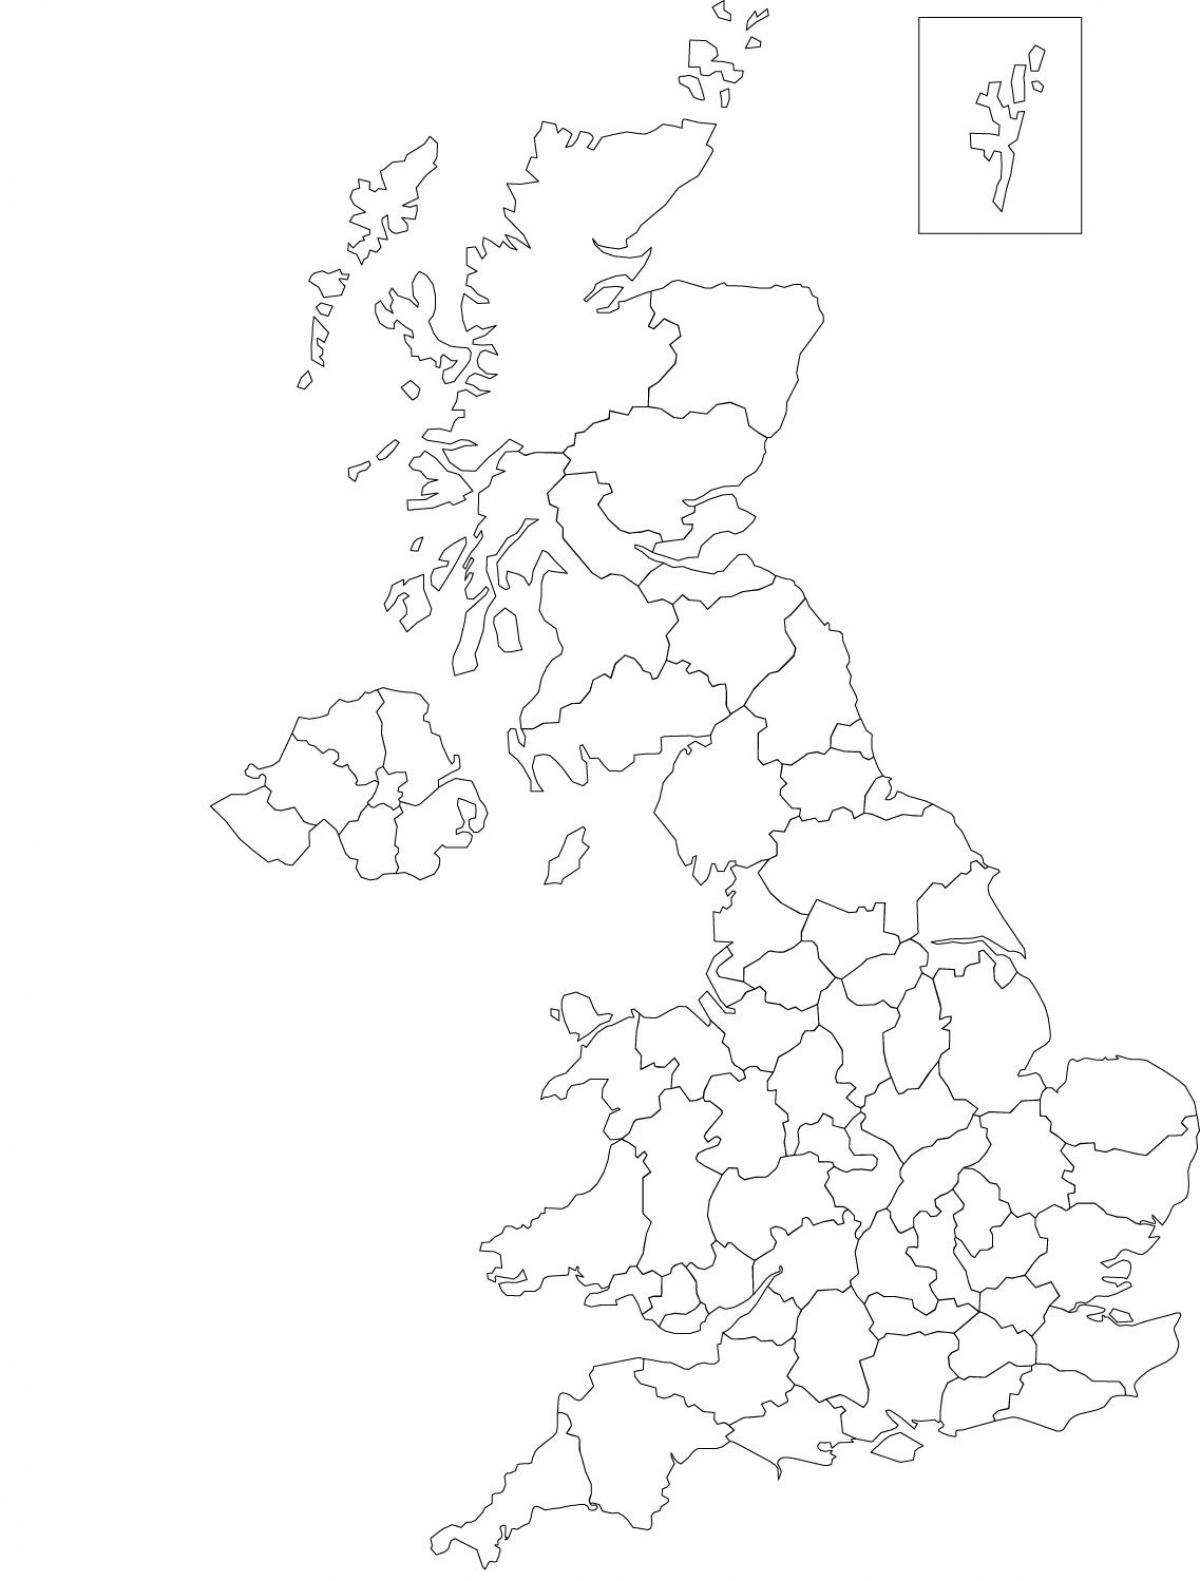 United Kingdom (UK) contours map